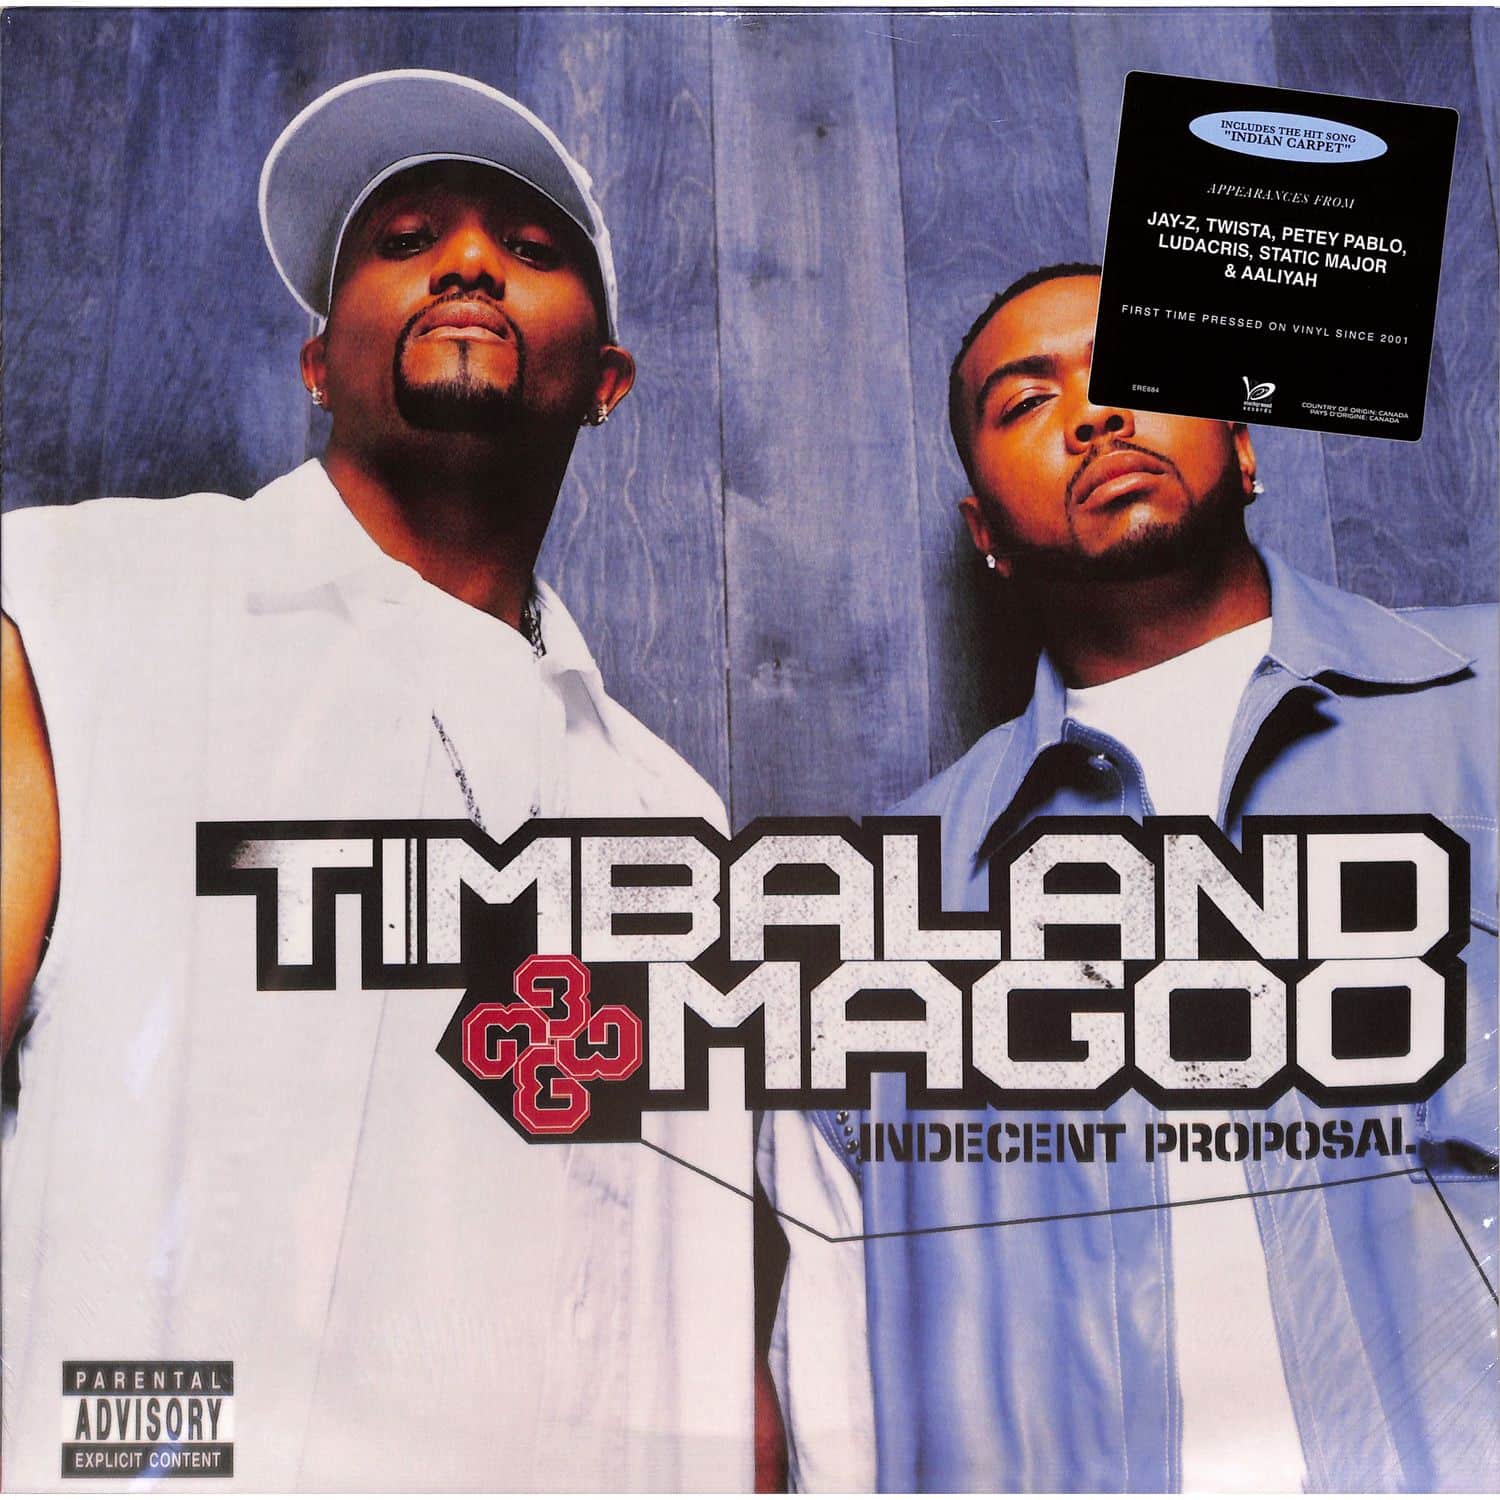 Timbaland & Magoo - INDICENT PROPOSAL 